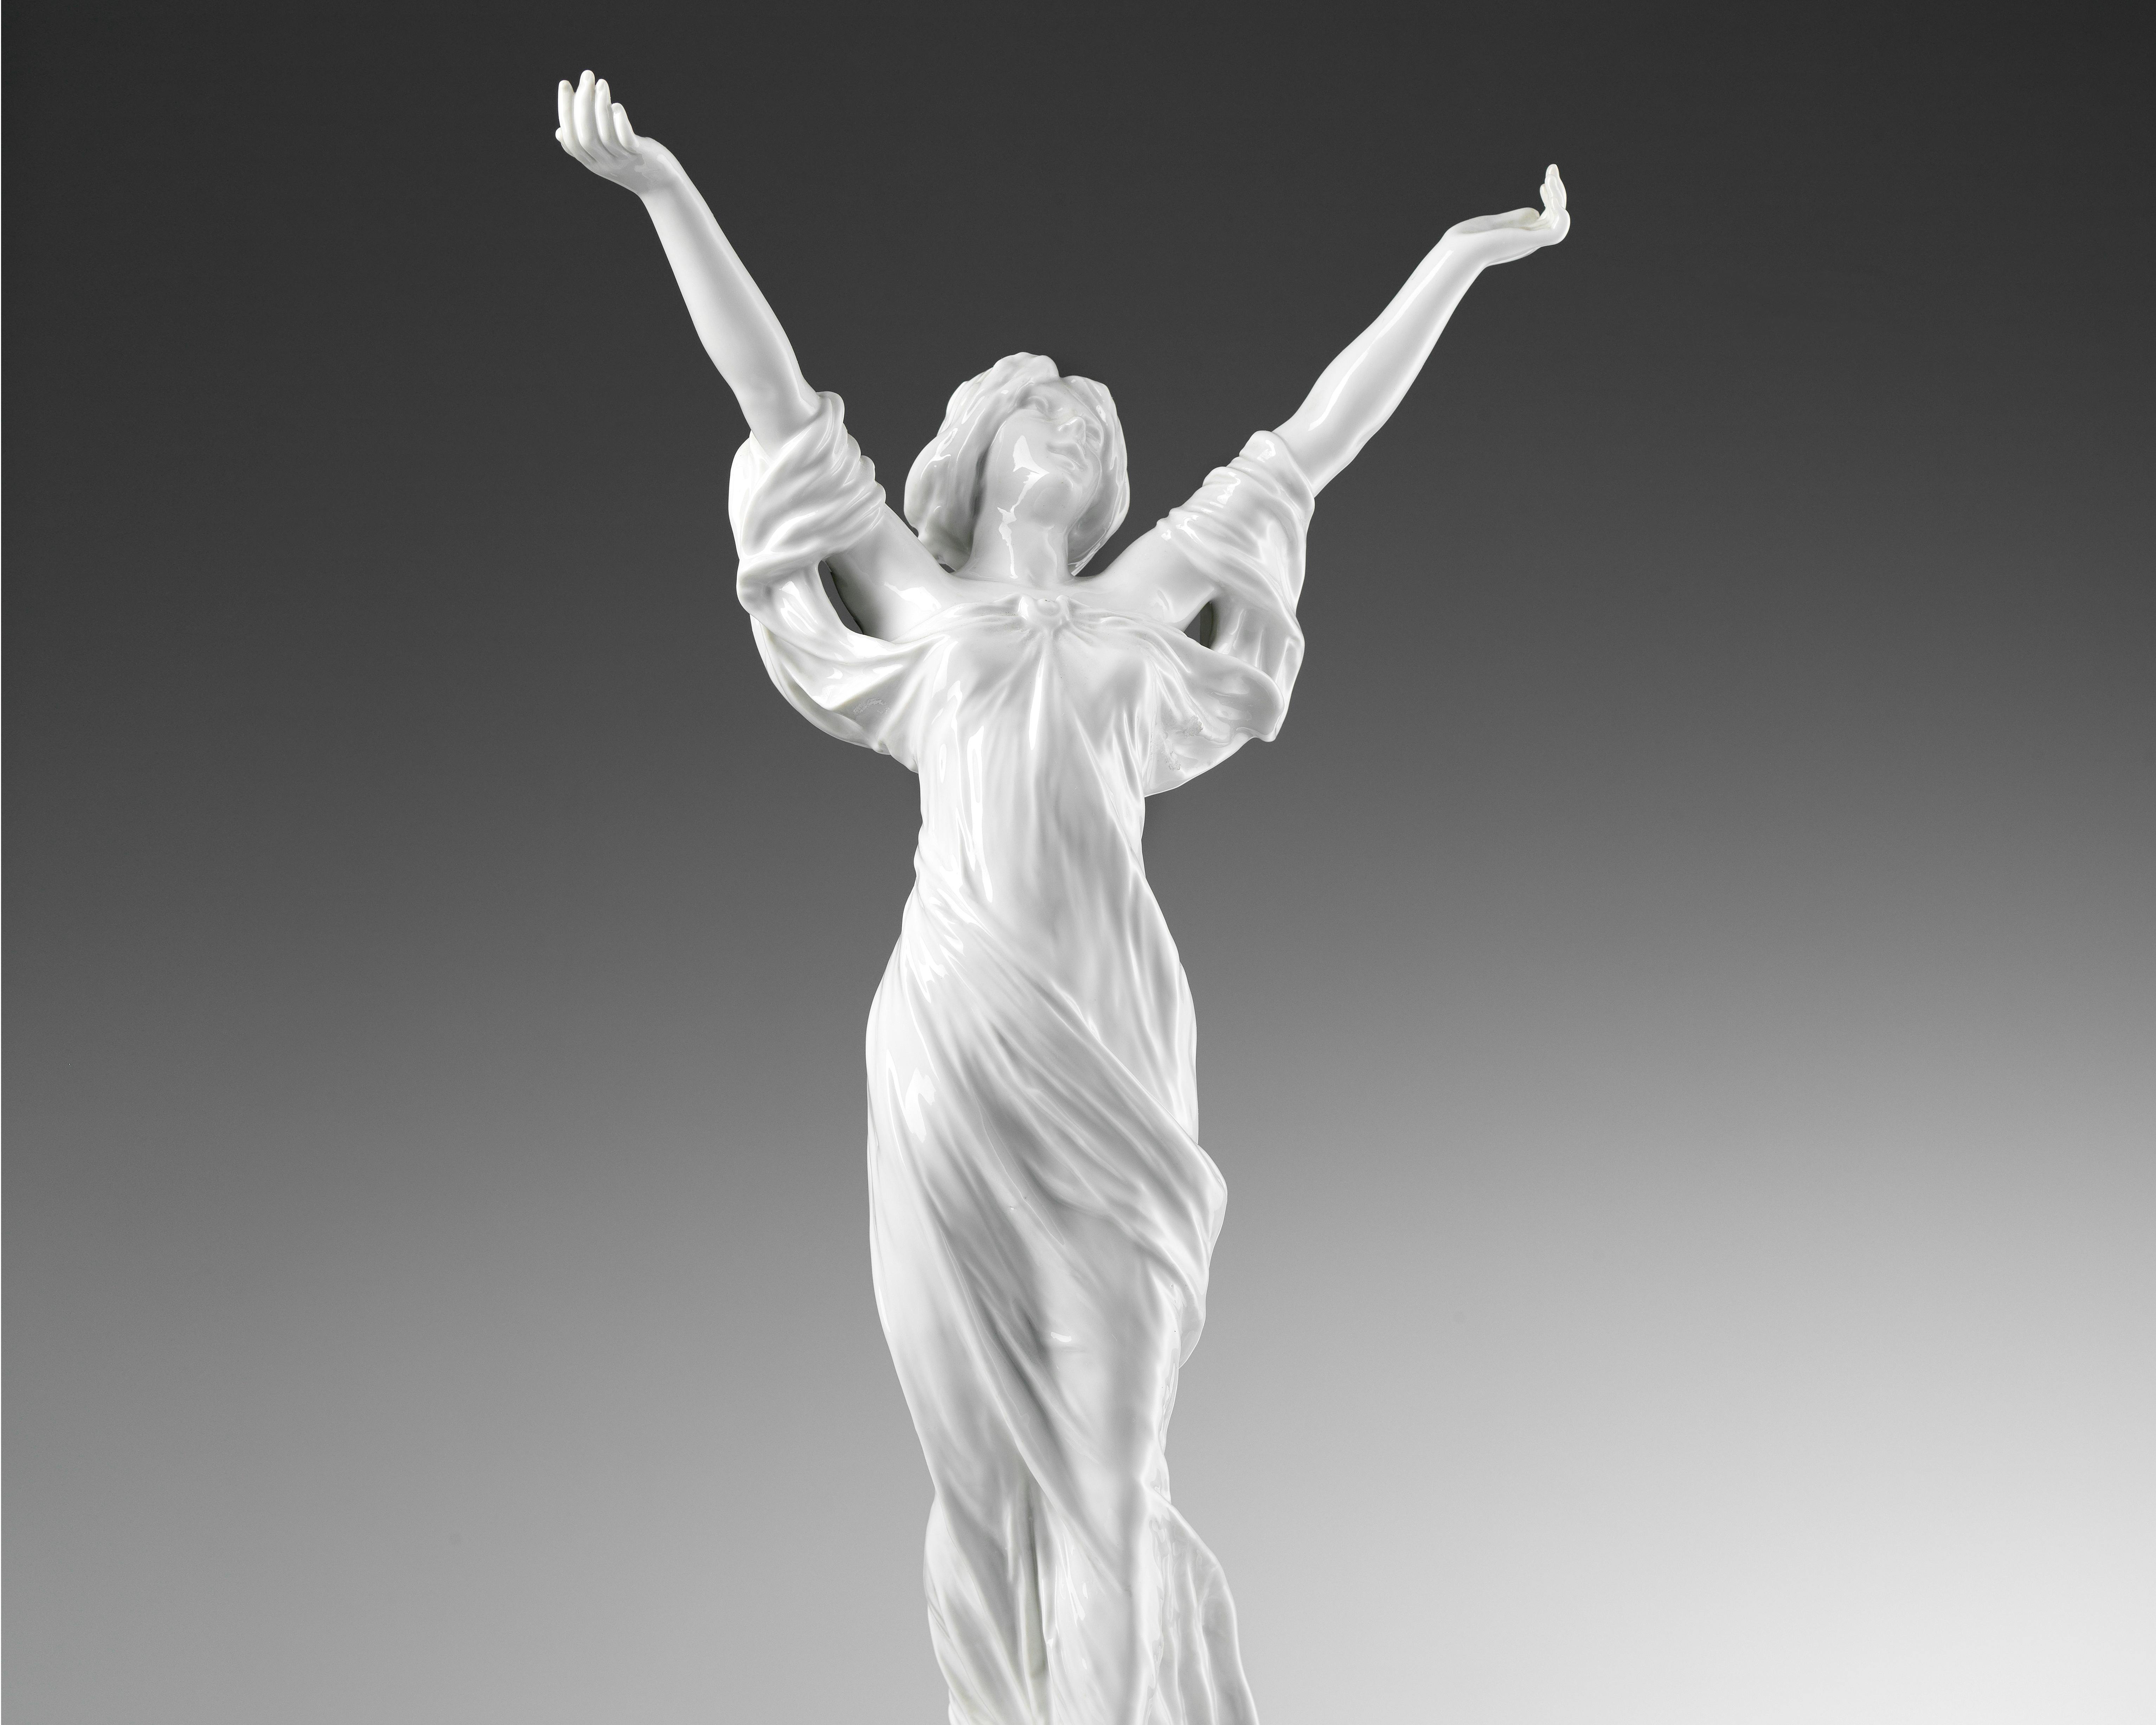 La scultura raffigura una donna a braccia aperte con una veste leggera mossa dal vento